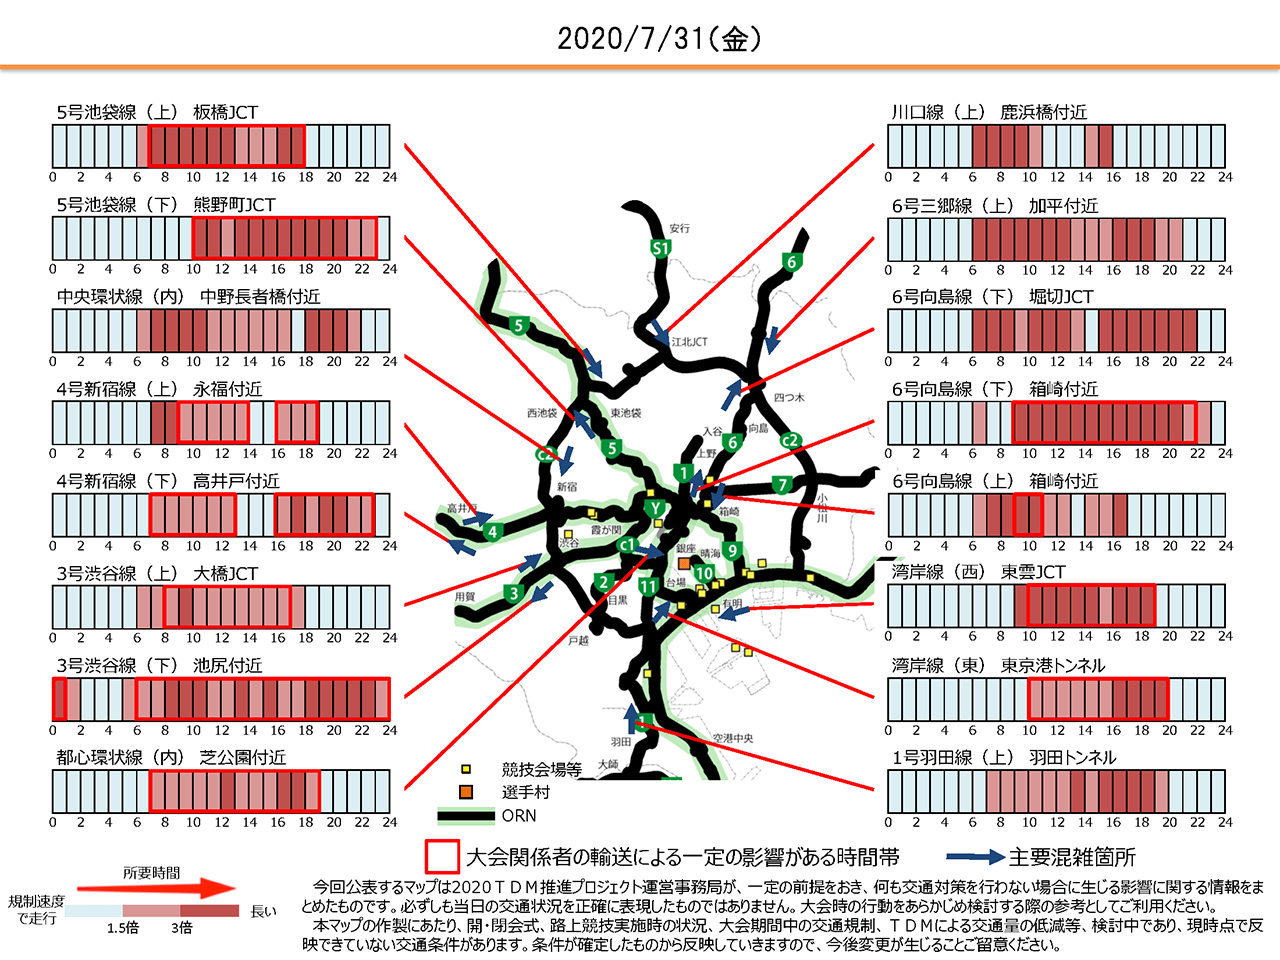 Carte des embouteillages au cours des Jeux olympiques du gouvernement métropolitain, à la date du 31 juillet 2020. Les barres rouges indiquent les heures où le trafic sera le plus dense. Carte actualisée le 15 juin 2019.